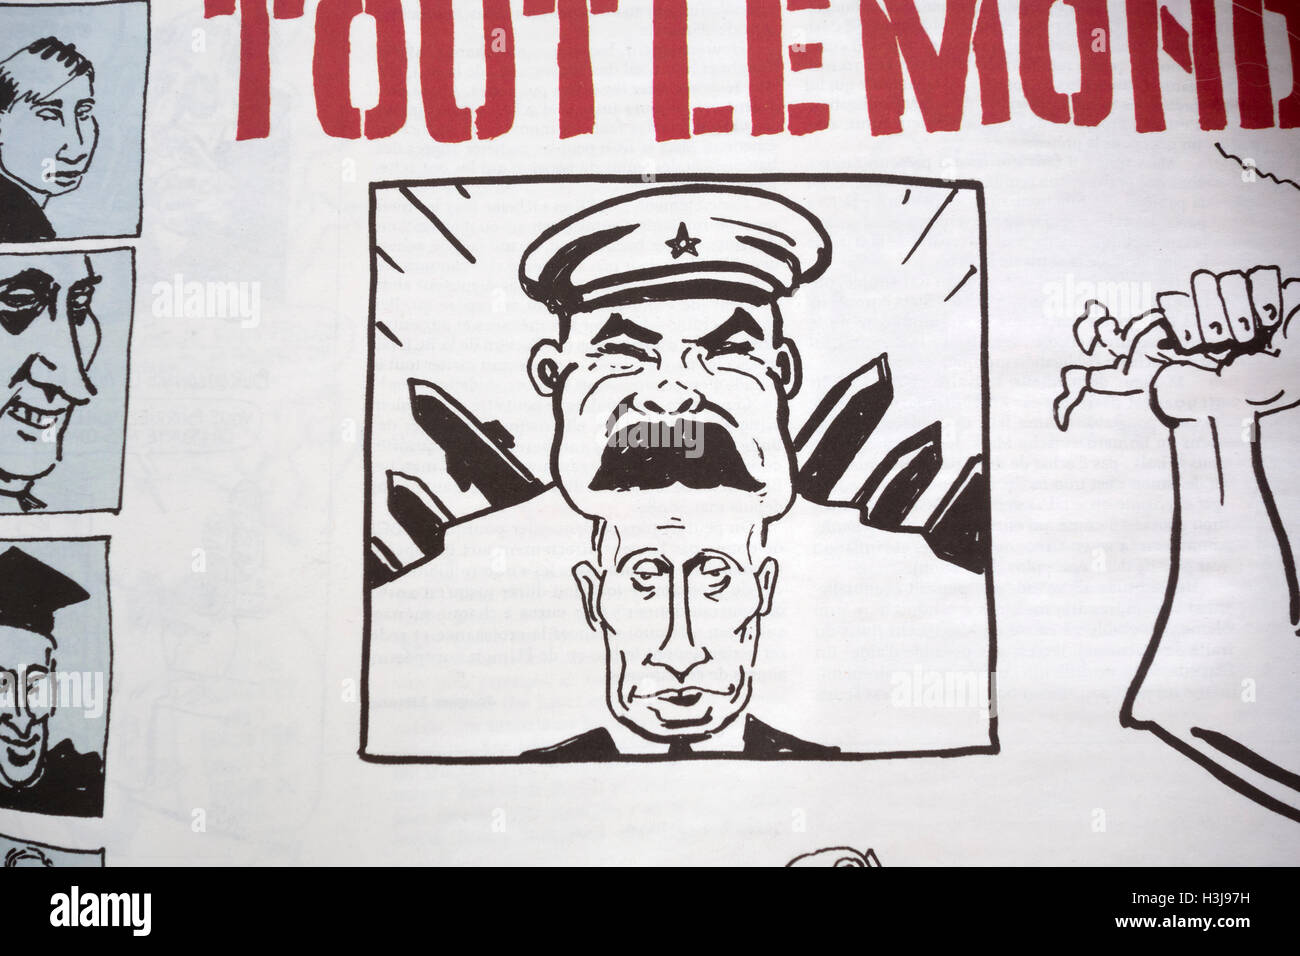 Vignetta satirica riflettendo Vladimir Putin il rammarico per il crollo della ex Unione Sovietica, Charlie Hebdo magazine Foto Stock